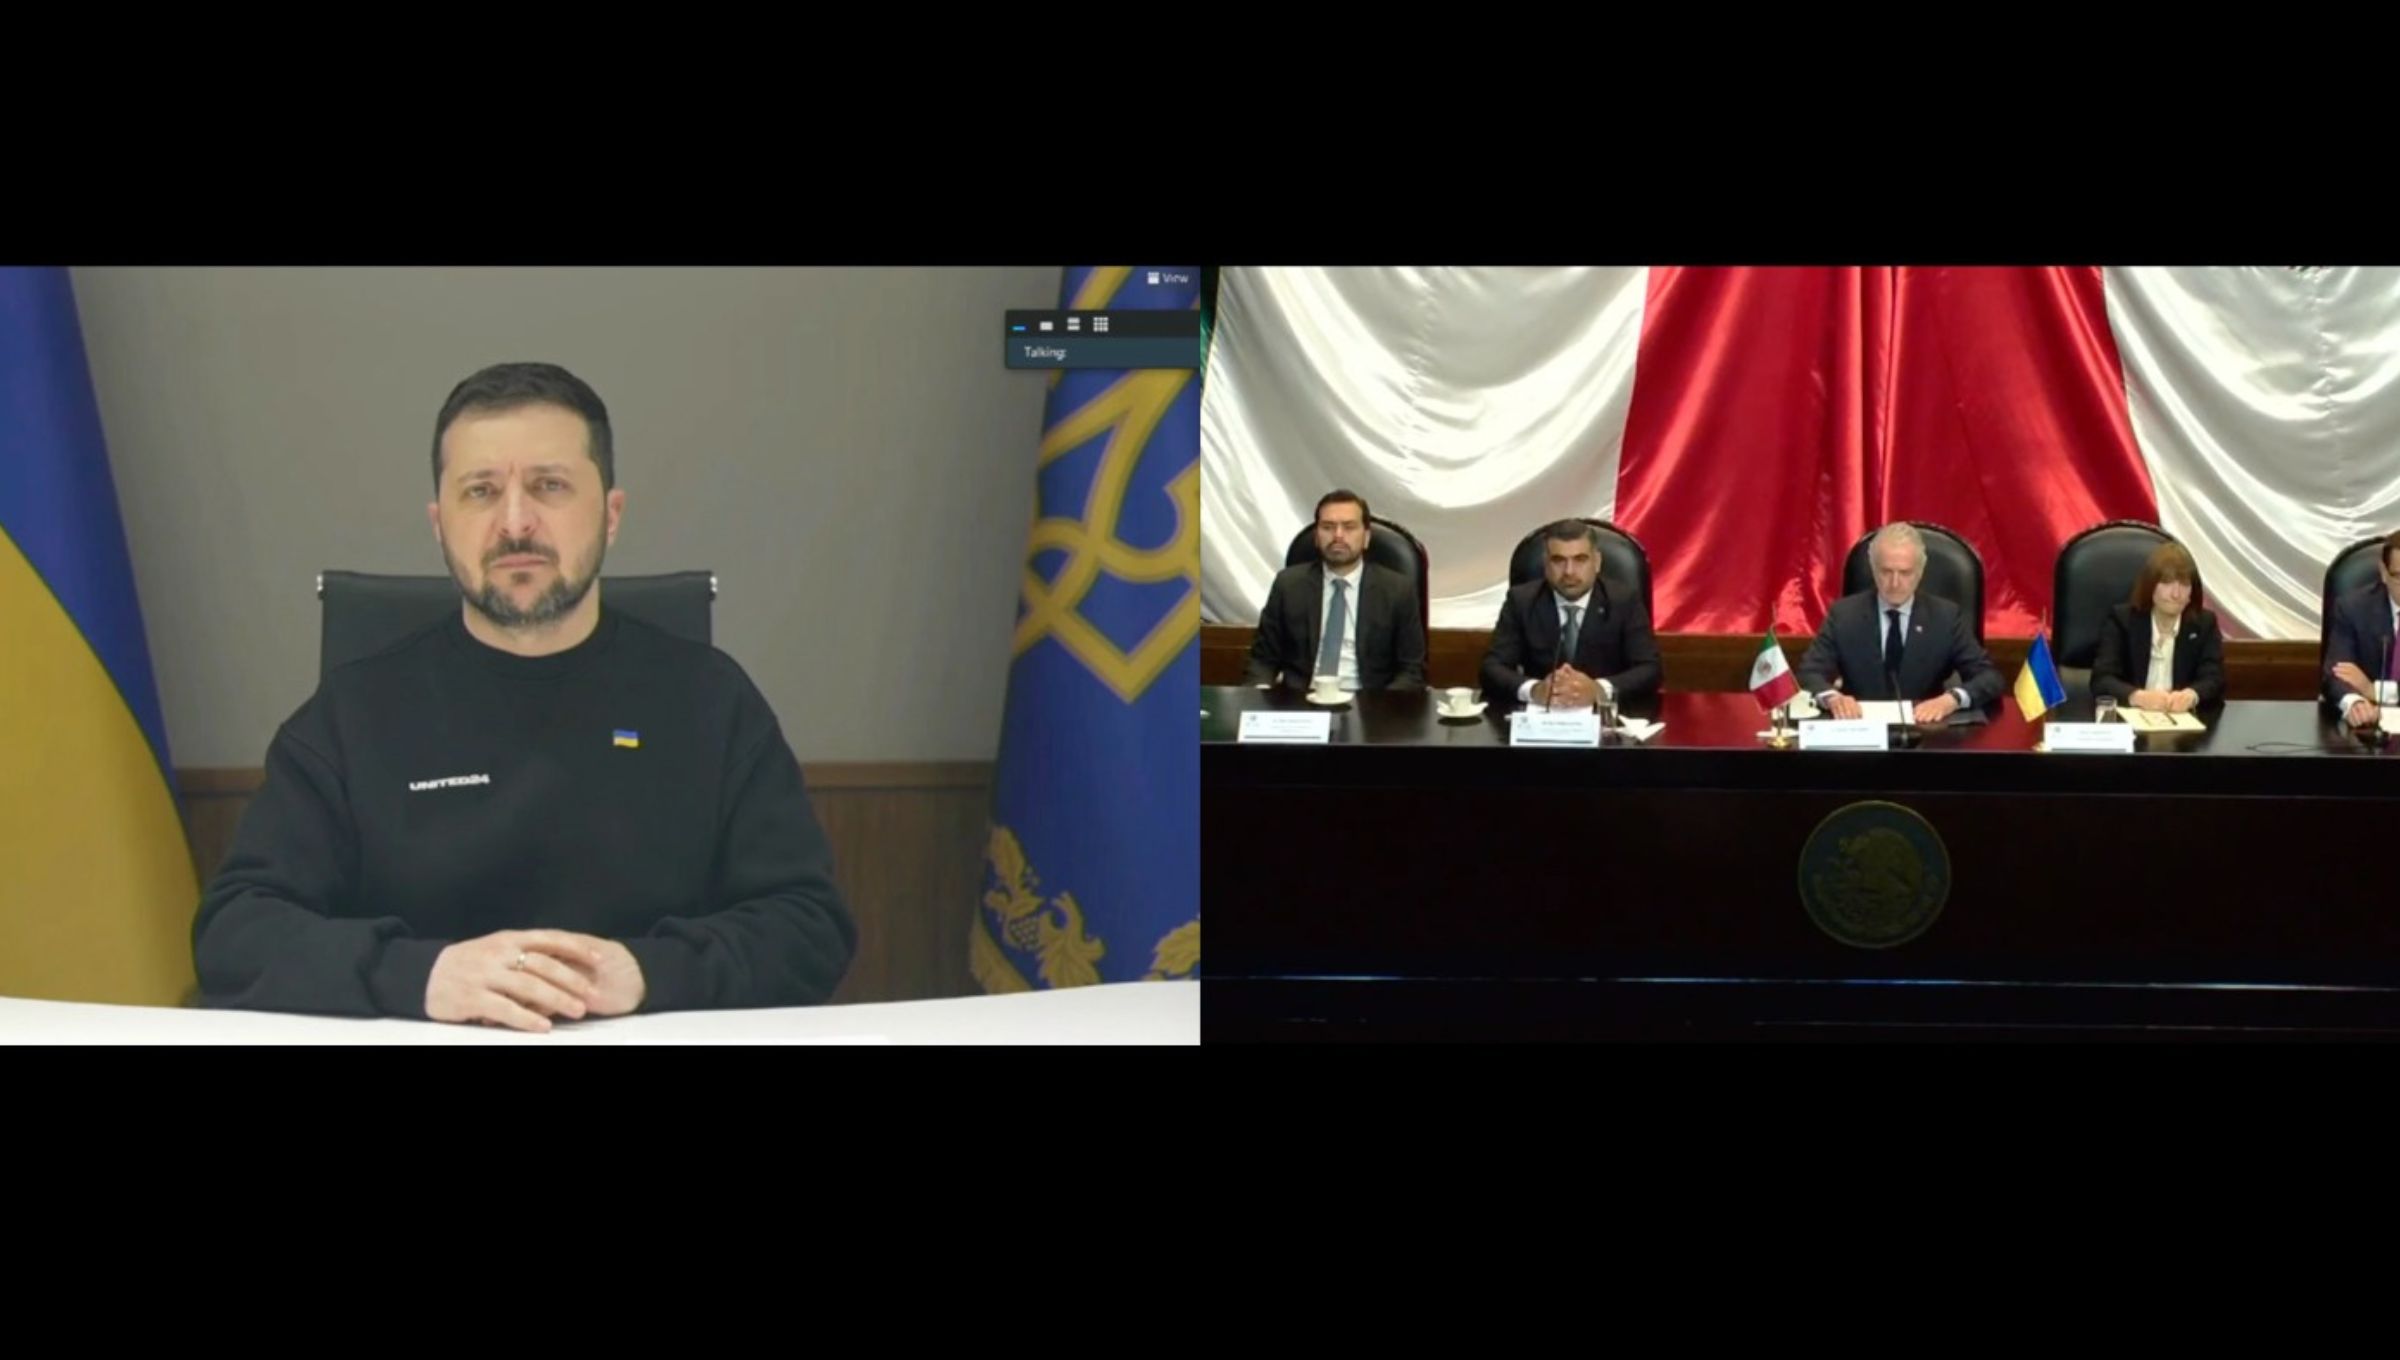 Santiago Creel reitera condena de México sobre la invasión a Ucrania; en reunión con Zelenski